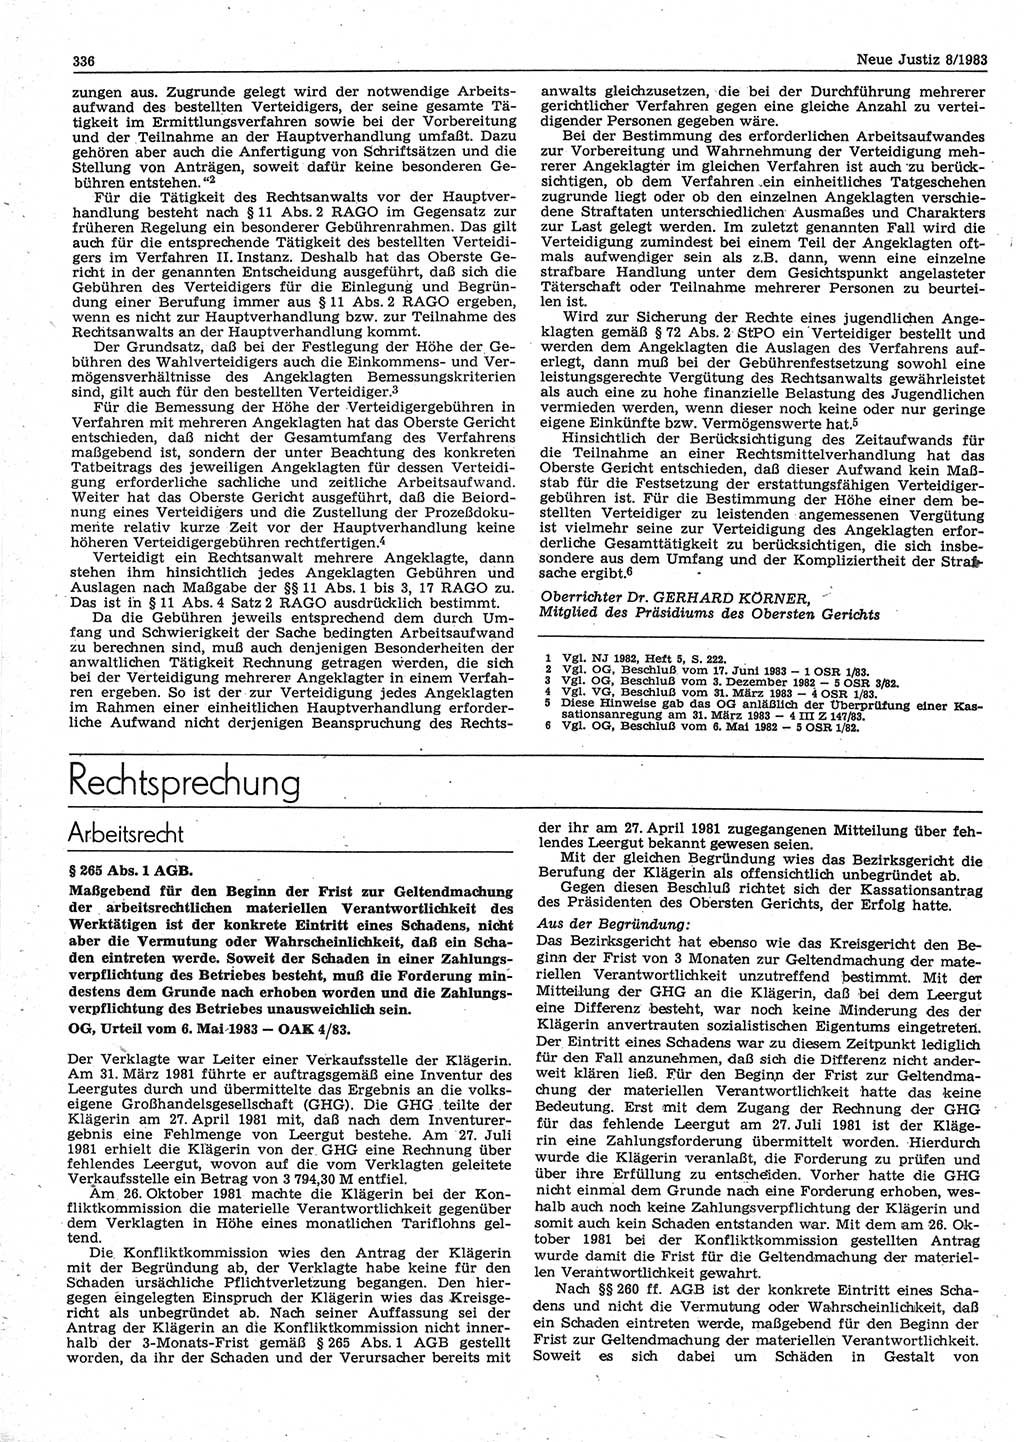 Neue Justiz (NJ), Zeitschrift für sozialistisches Recht und Gesetzlichkeit [Deutsche Demokratische Republik (DDR)], 37. Jahrgang 1983, Seite 336 (NJ DDR 1983, S. 336)